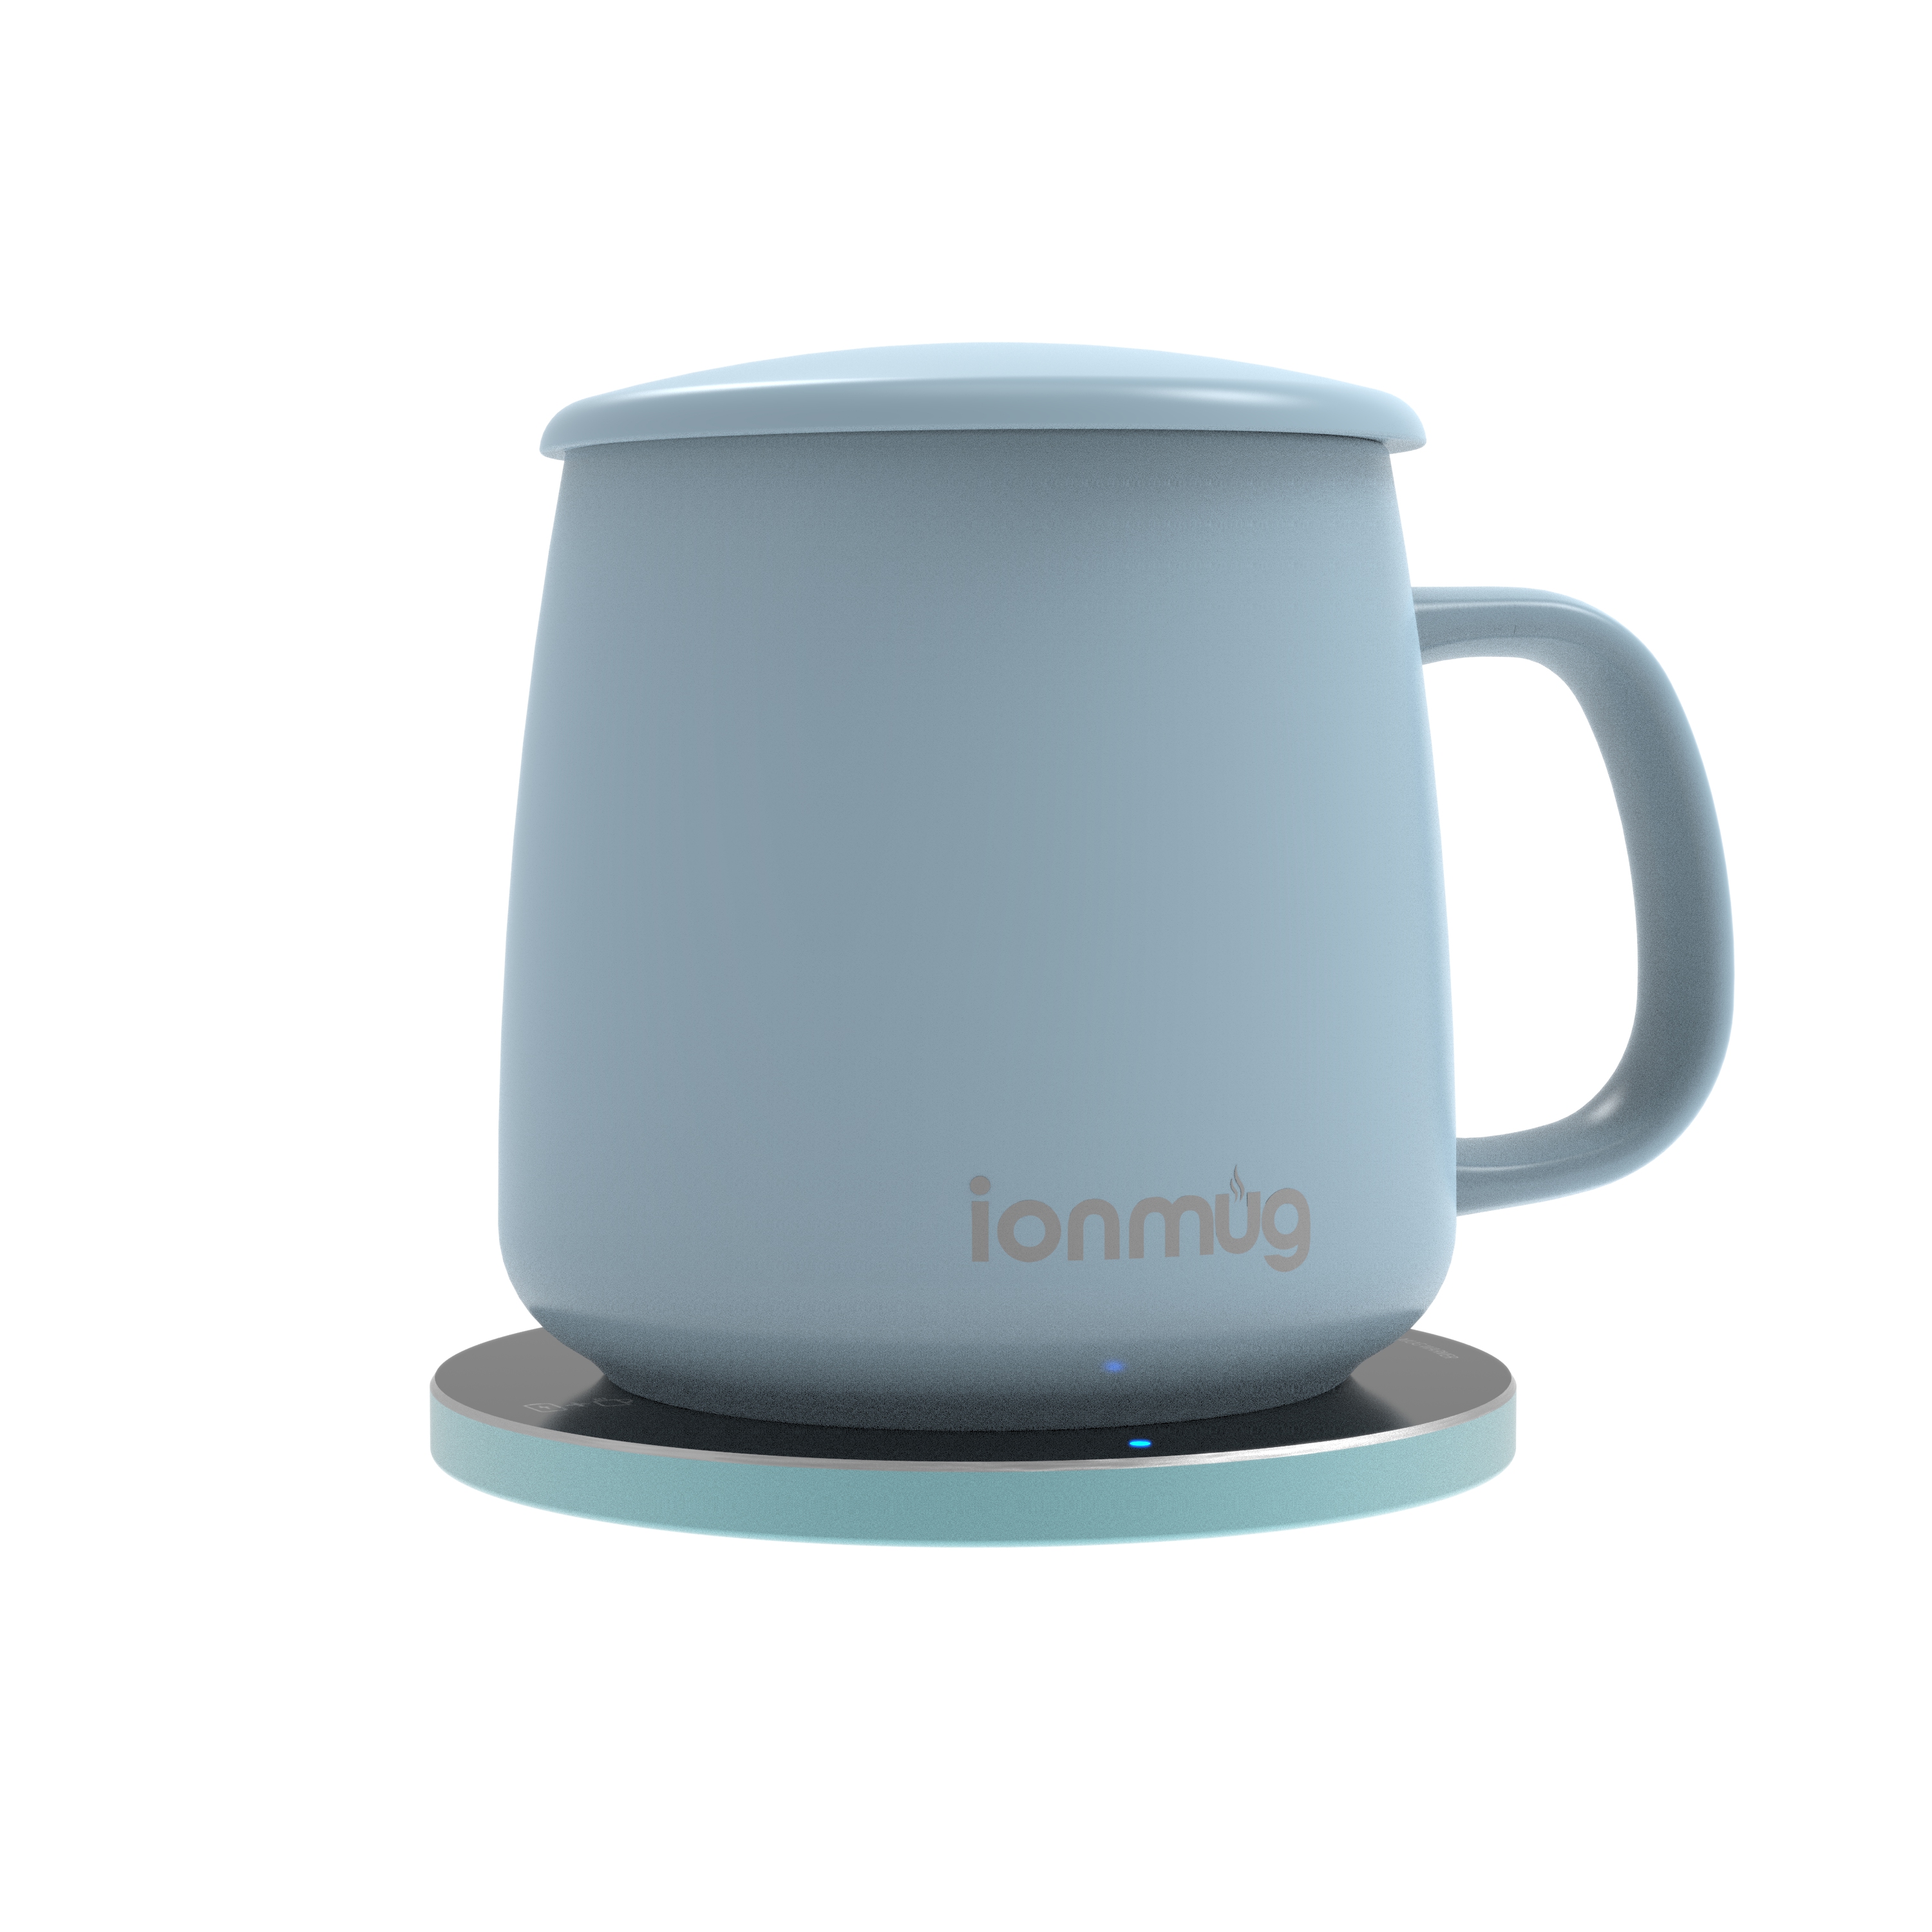 ionMug and Wireless Charging Coaster, 12.8 oz. Ceramic Mug and Coaster